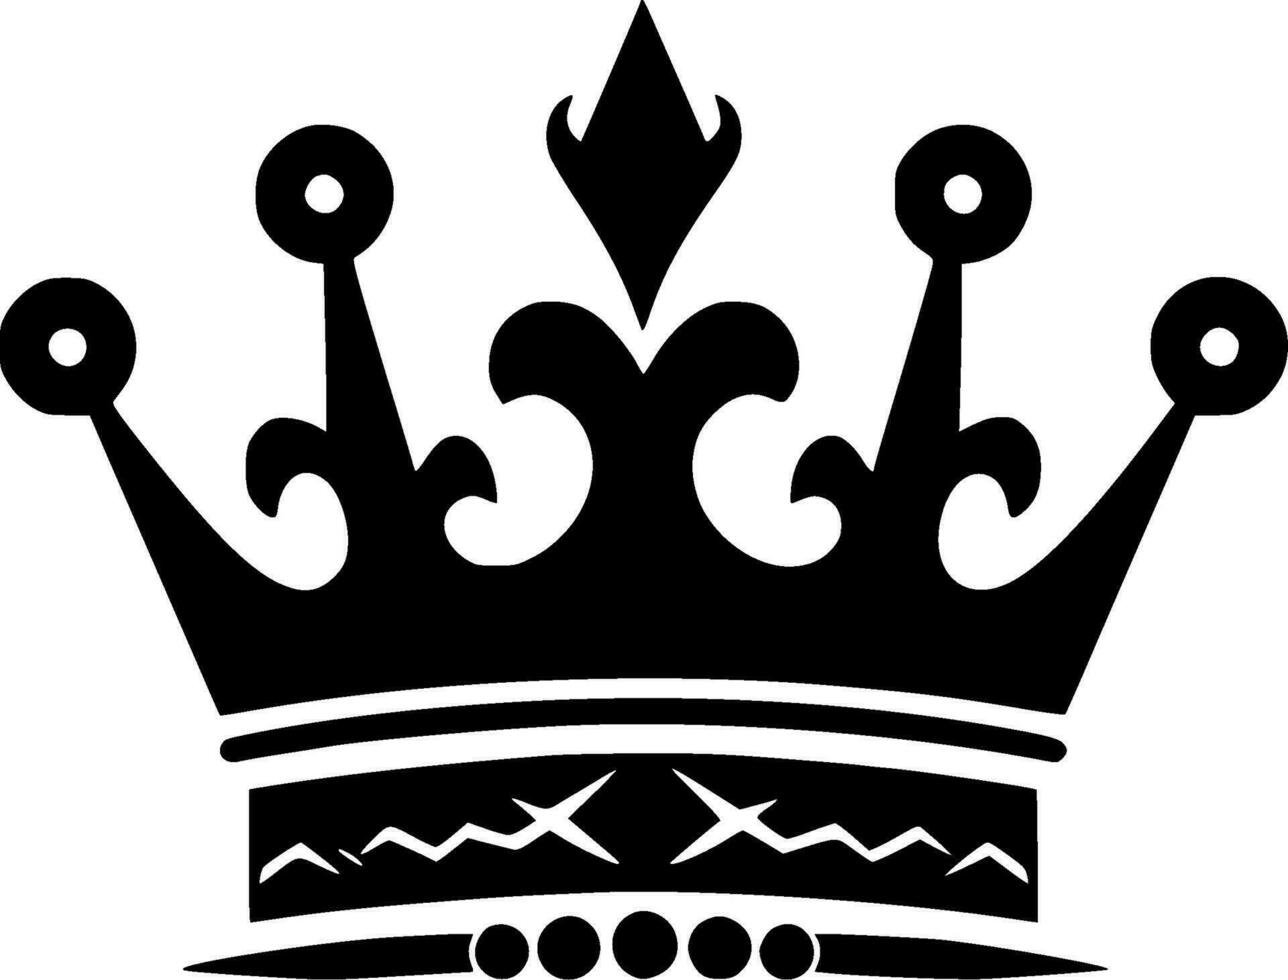 coroa - Alto qualidade vetor logotipo - vetor ilustração ideal para camiseta gráfico